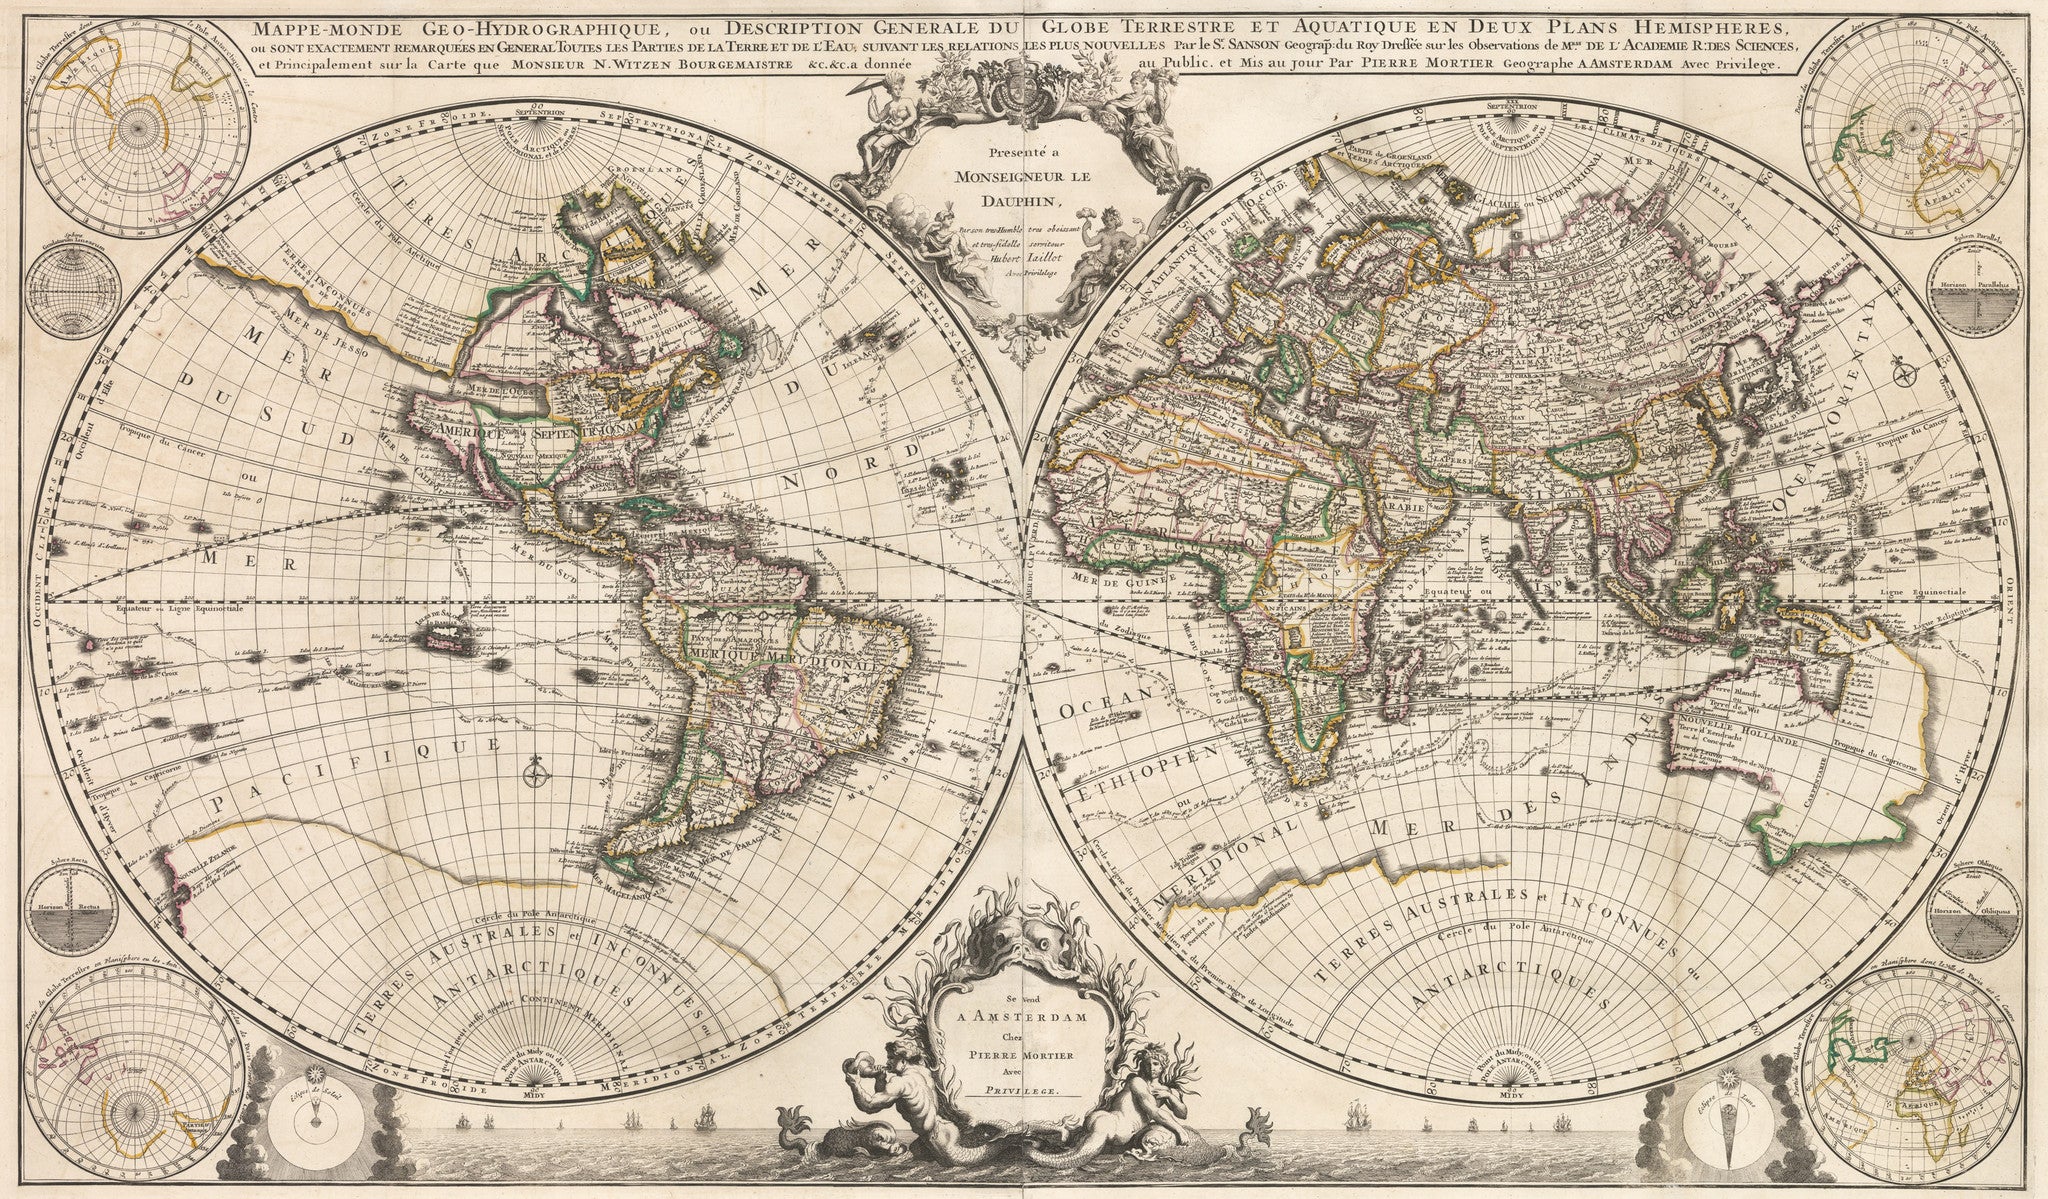 1721 Mappe-Monde Geo-Hydrographique, ou Description Generale du Globe  Terrestre